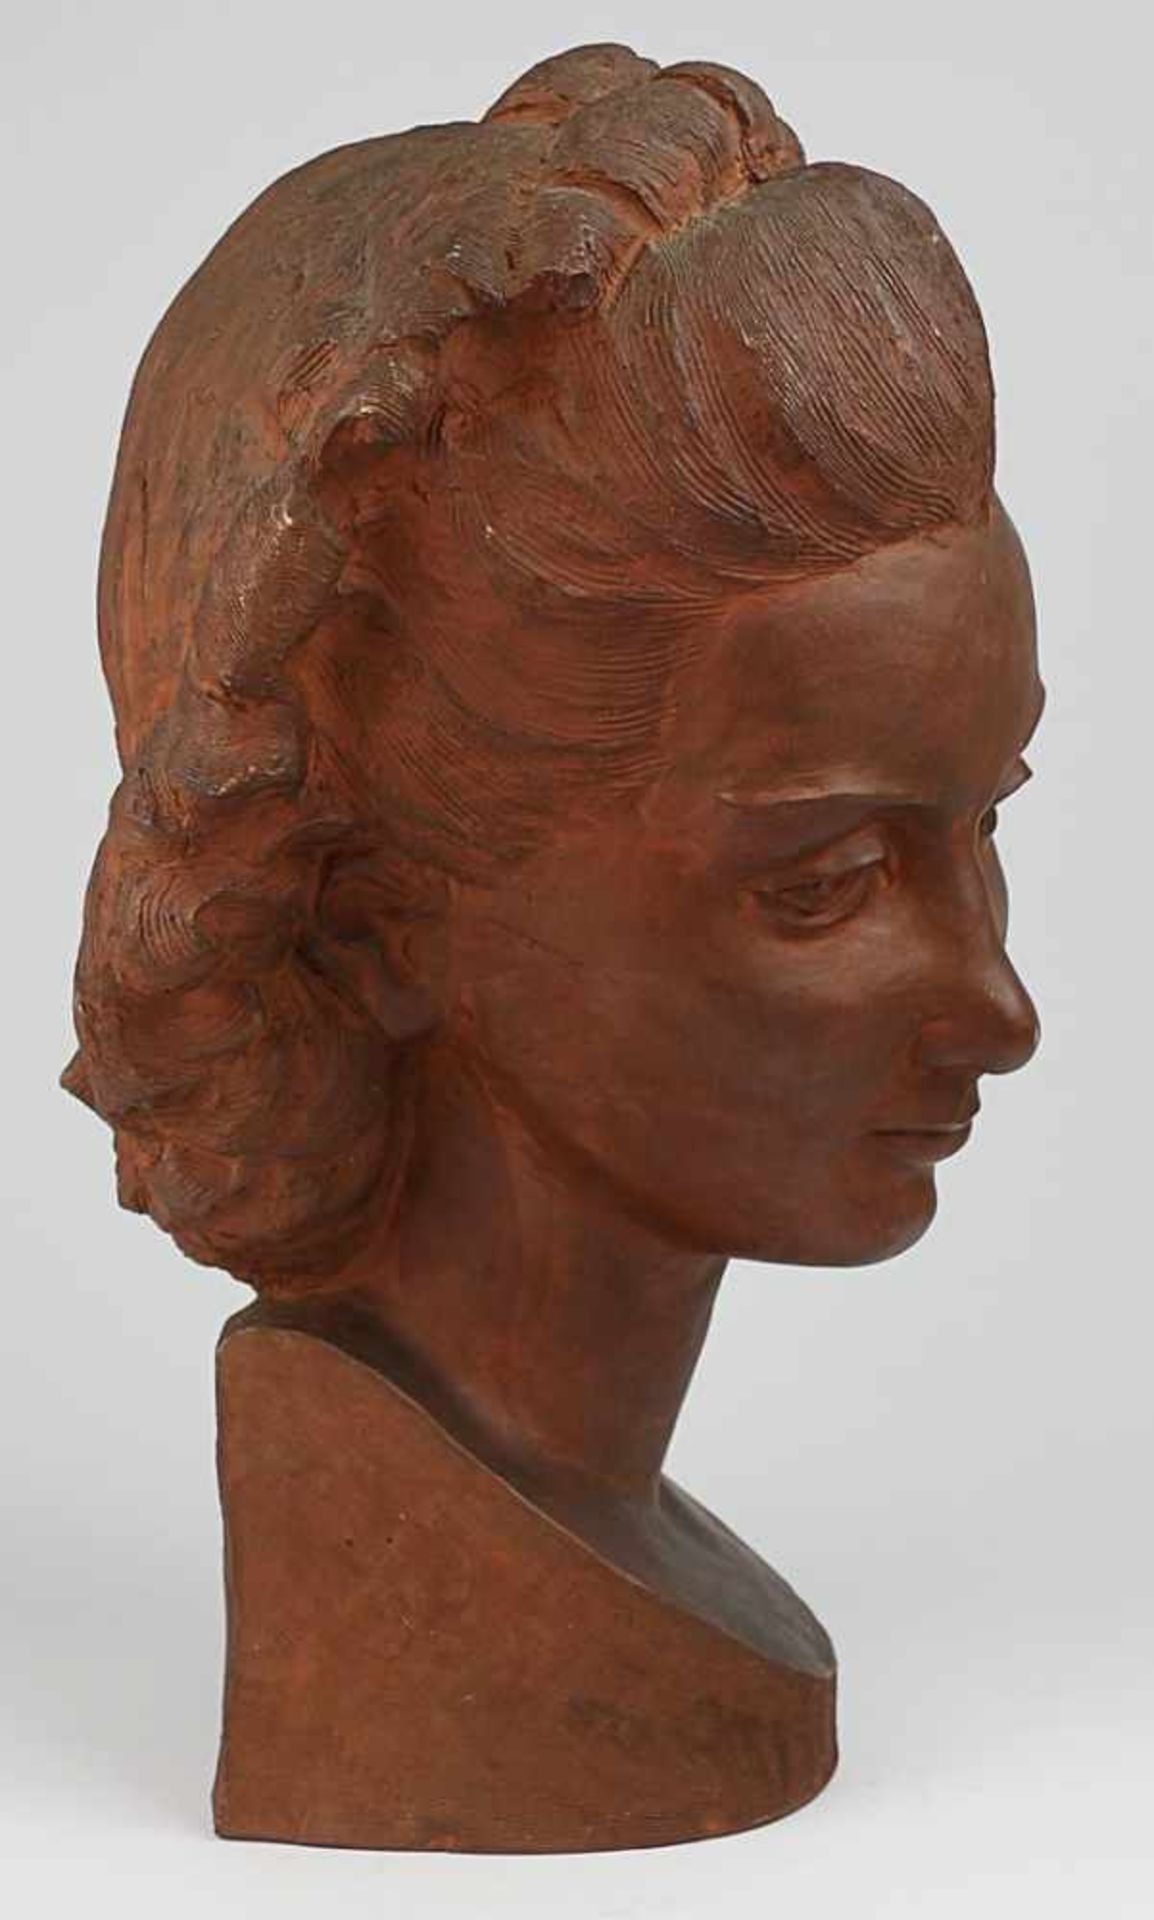 Gerz-Schenk, Herta - Skulptur 1940erJahre, rs. sign.,1943, roter Scherben, Frauenkopf mit - Bild 2 aus 6